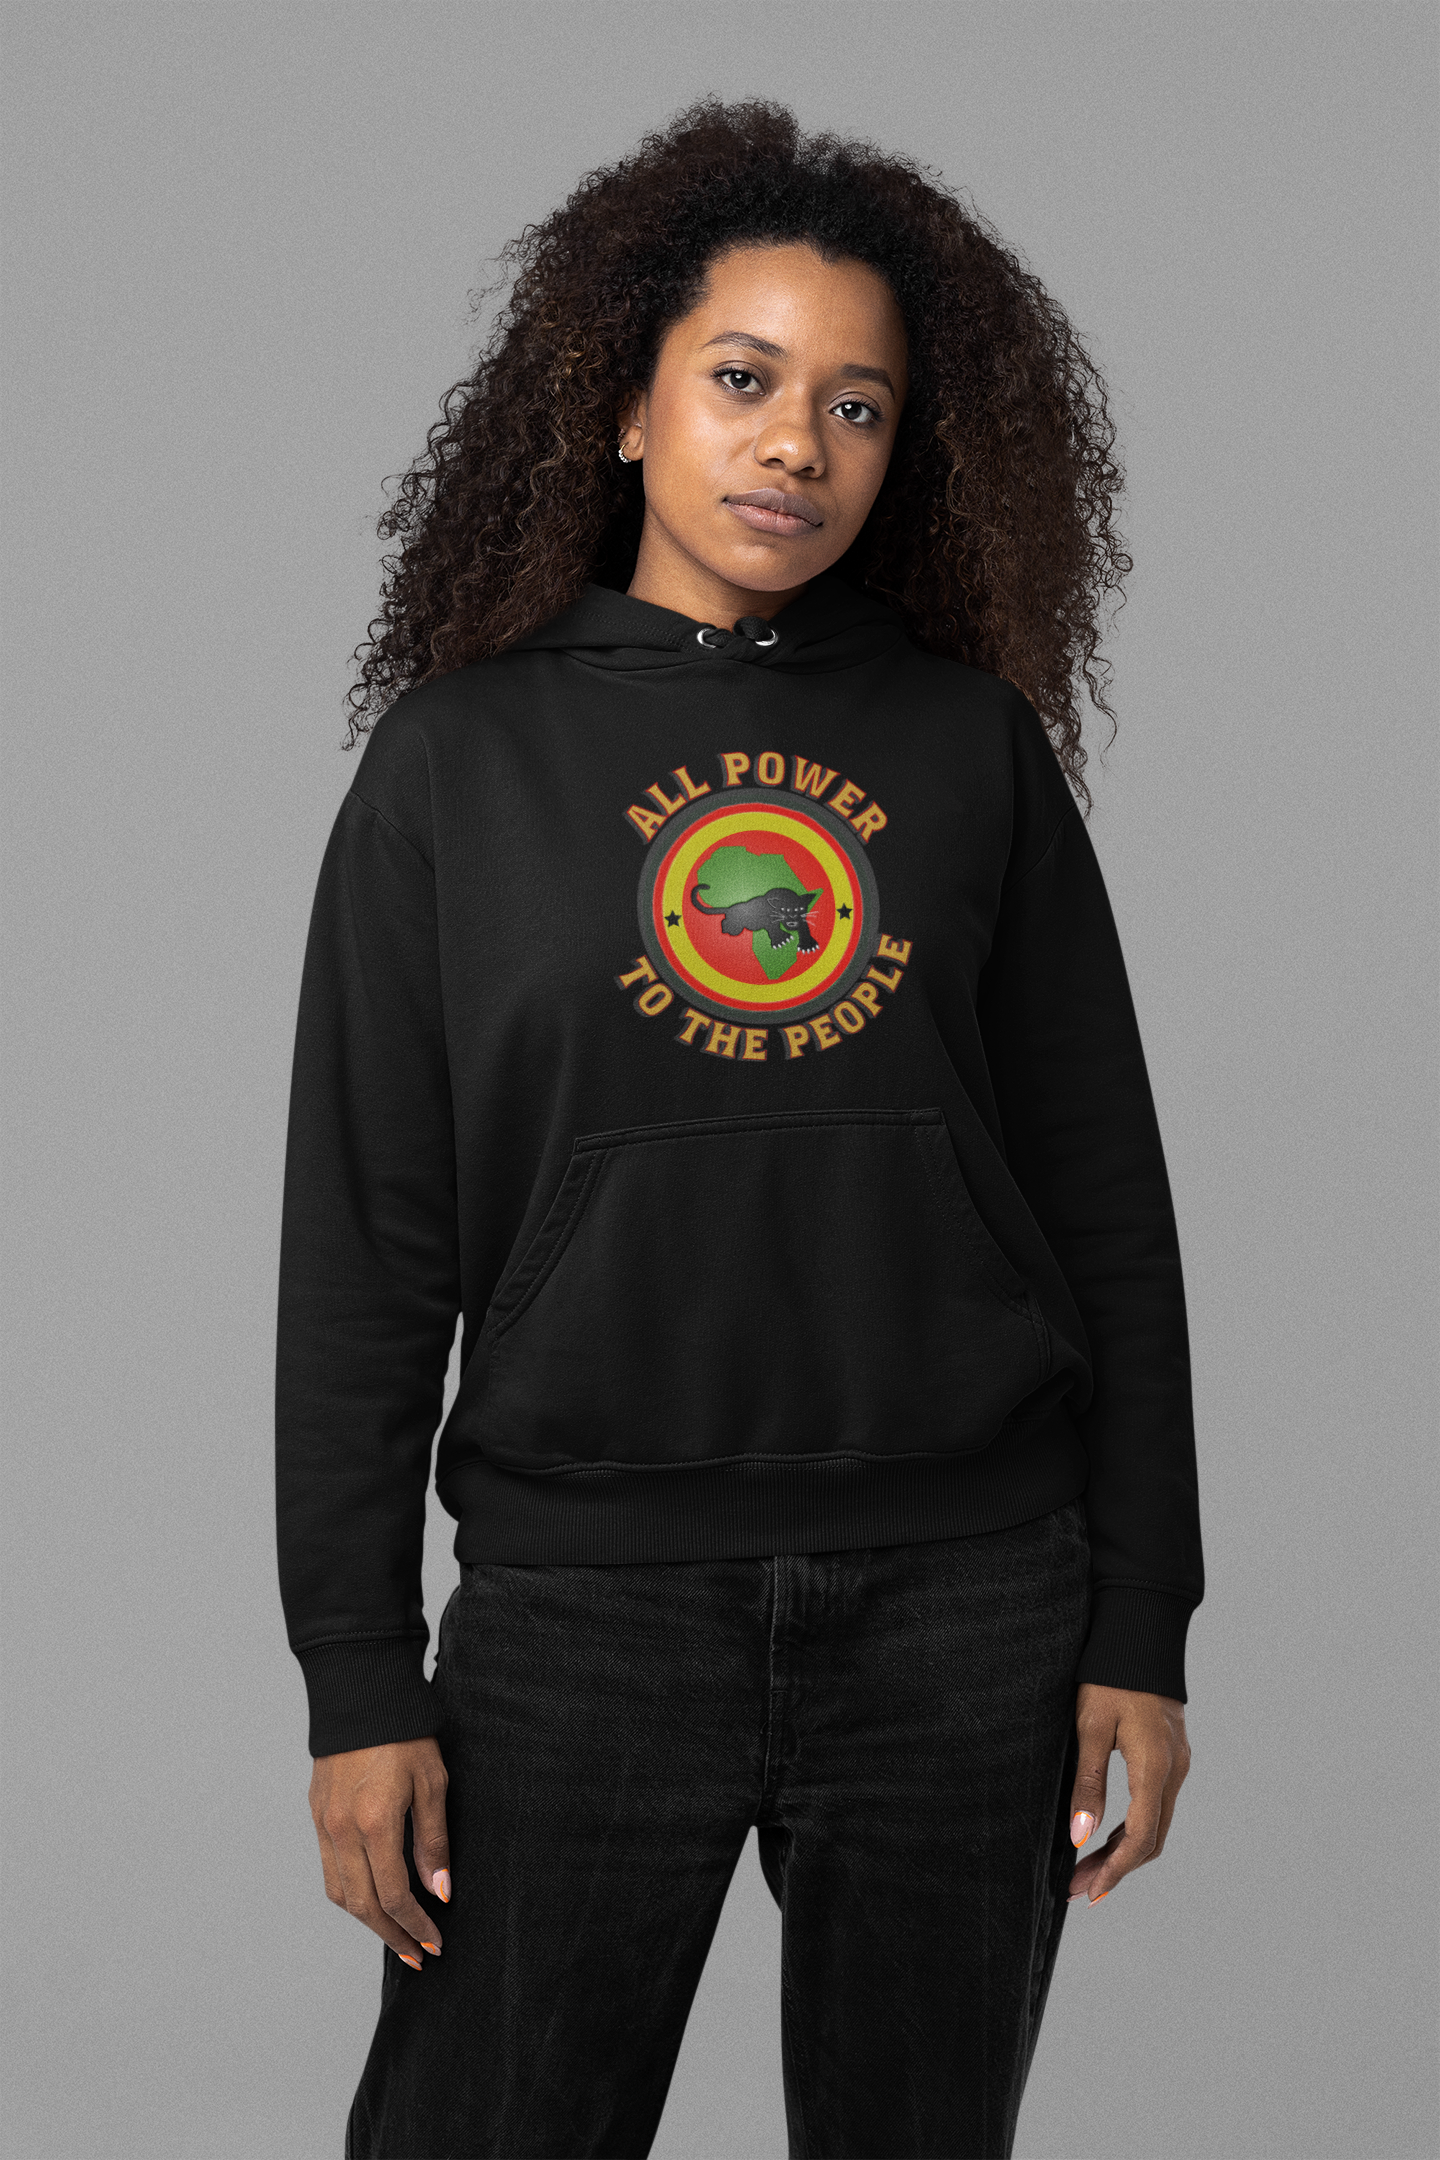 Black Panther Party  Hoodie- Black History Inspired Streetwear Hoodie